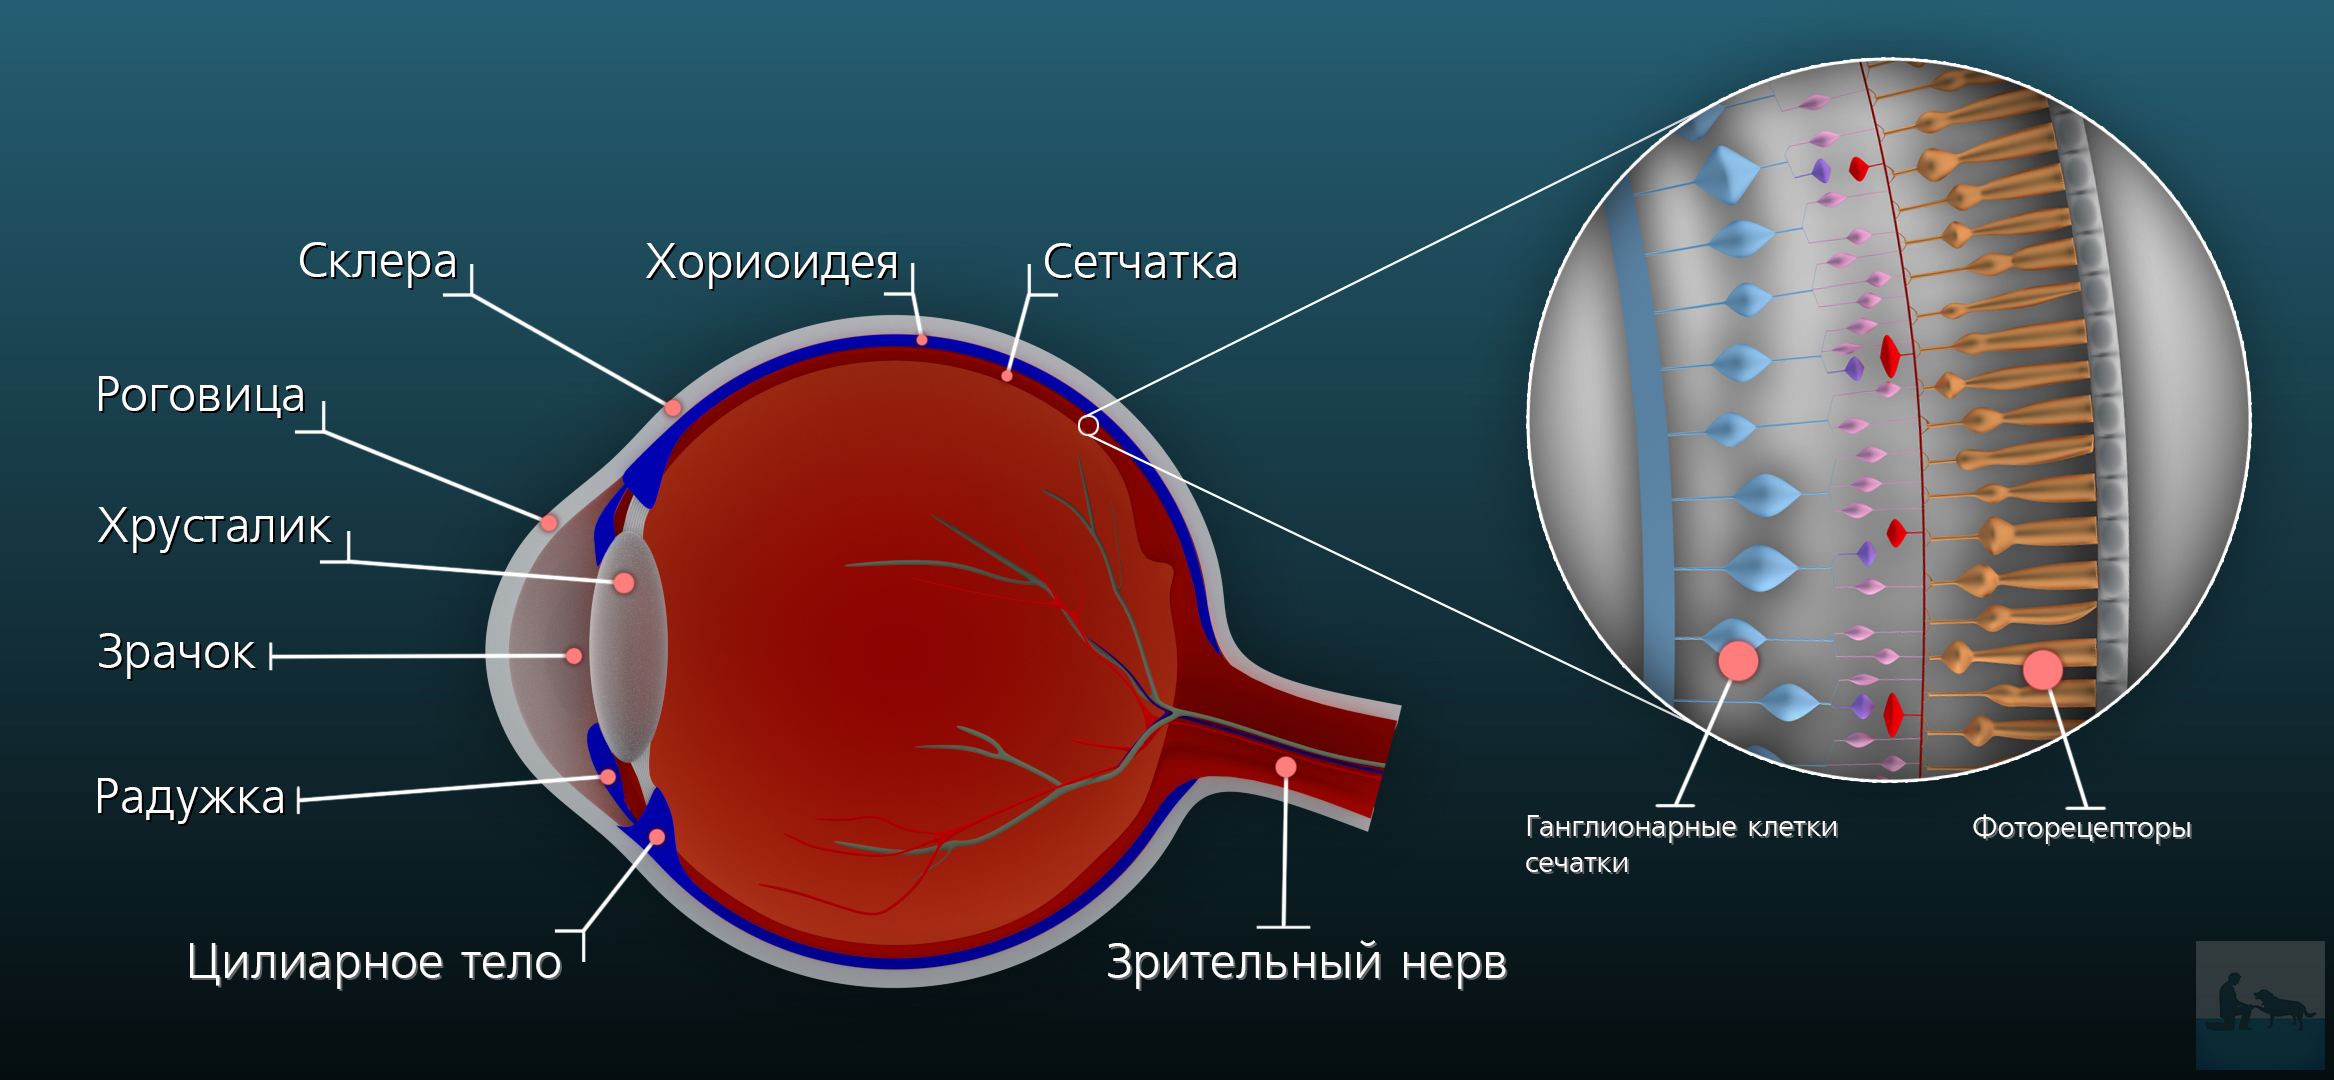 Фоторецепторы сетчатки глаза